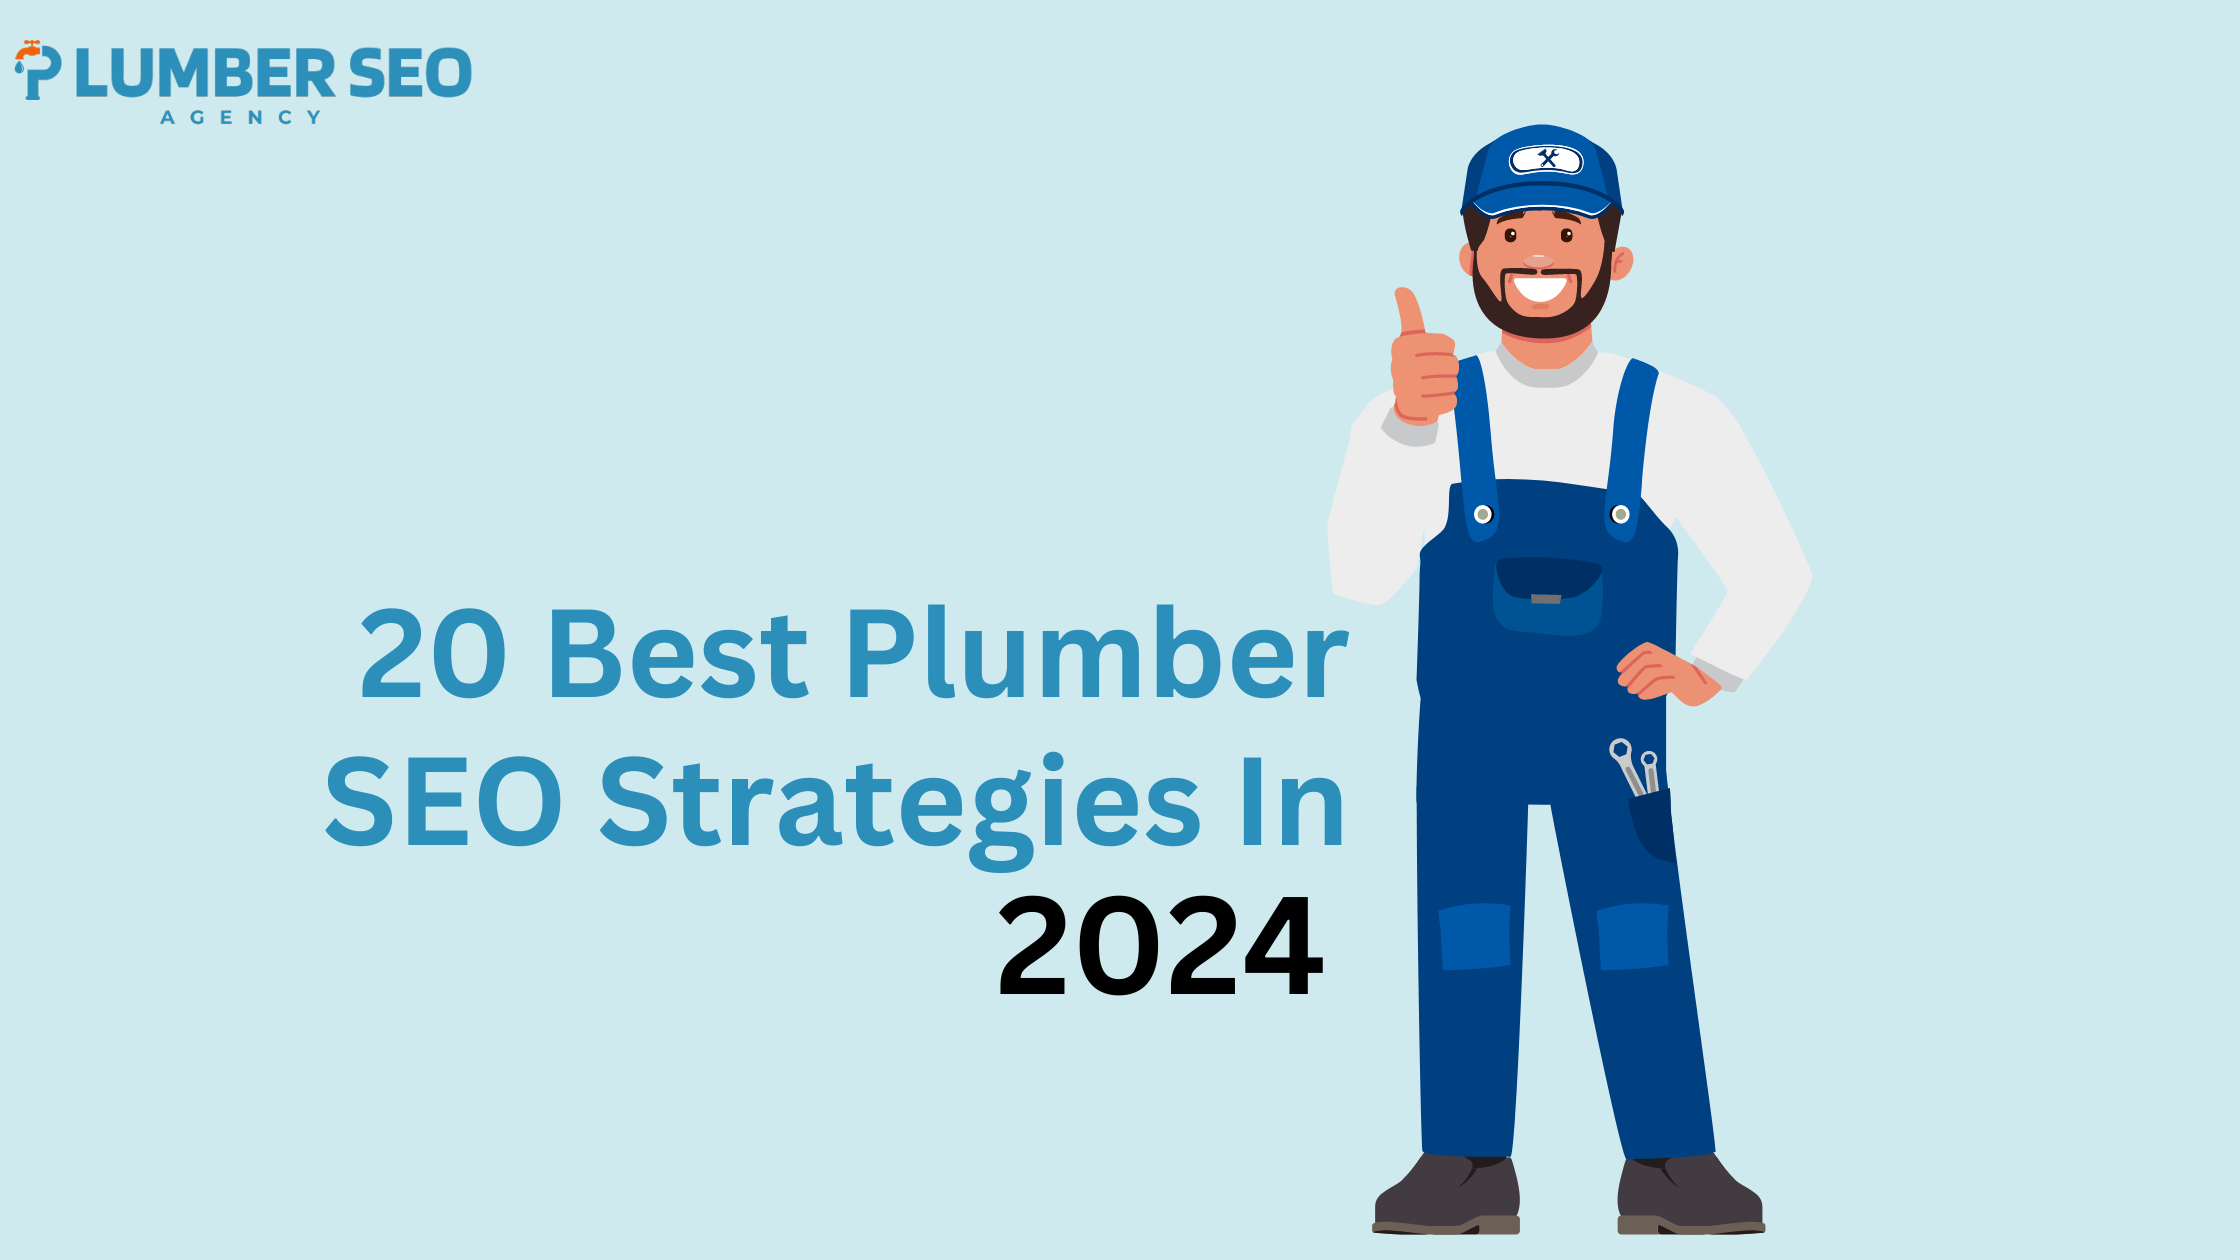 20 Best Plumber SEO Strategies In 2024